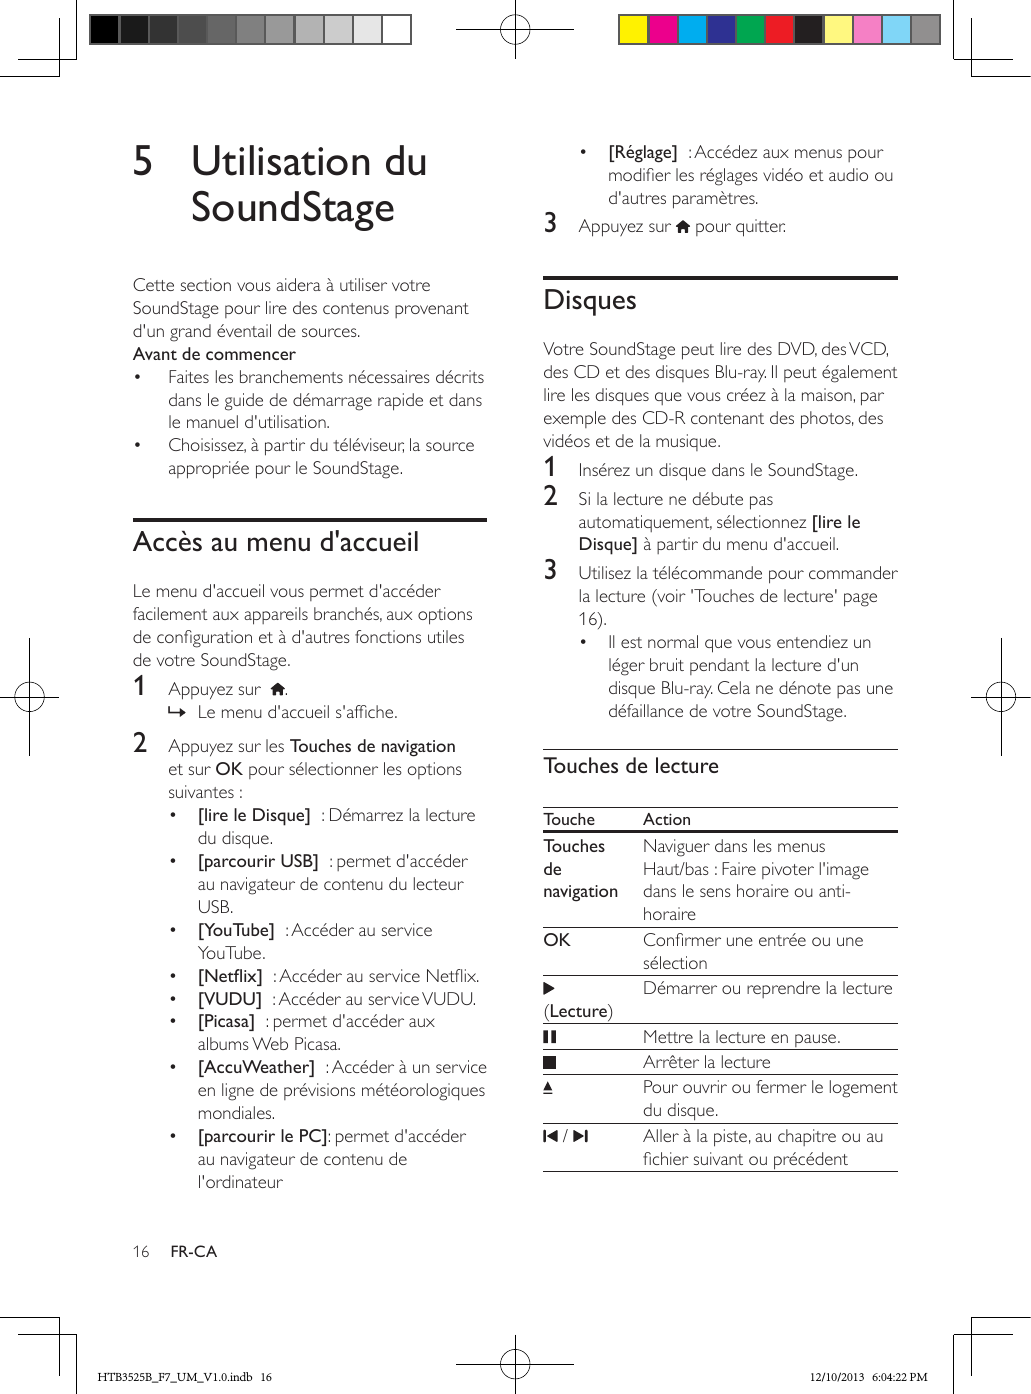 16 FR-CA5  Utilisation du SoundStageCette section vous aidera à utiliser votre SoundStage pour lire des contenus provenant d&apos;un grand éventail de sources.Avant de commencer•  Faites les branchements nécessaires décrits dans le guide de démarrage rapide et dans le manuel d&apos;utilisation.•  Choisissez, à partir du téléviseur, la source appropriée pour le SoundStage.Accès au menu d&apos;accueilLe menu d&apos;accueil vous permet d&apos;accéder facilement aux appareils branchés, aux options de conguration et à d&apos;autres fonctions utiles de votre SoundStage.1  Appuyez sur   . » Le menu d&apos;accueil s&apos;afche.2  Appuyez sur les Touches de navigation et sur OK pour sélectionner les options suivantes :•  [lire le Disque]  : Démarrez la lecture du disque.•  [parcourir USB]  : permet d&apos;accéder au navigateur de contenu du lecteur USB.•  [YouTube]  : Accéder au service YouTube.•  [Netix]  : Accéder au service Netix.•  [VUDU]  : Accéder au service VUDU.•  [Picasa]  : permet d&apos;accéder aux albums Web Picasa.•  [AccuWeather]  : Accéder à un service en ligne de prévisions météorologiques mondiales.•  [parcourir le PC]: permet d&apos;accéder au navigateur de contenu de l&apos;ordinateur•  [Réglage]  : Accédez aux menus pour modier les réglages vidéo et audio ou d&apos;autres paramètres.3  Appuyez sur   pour quitter.DisquesVotre SoundStage peut lire des DVD, des VCD, des CD et des disques Blu-ray. Il peut également lire les disques que vous créez à la maison, par exemple des CD-R contenant des photos, des vidéos et de la musique.1  Insérez un disque dans le SoundStage.2  Si la lecture ne débute pas automatiquement, sélectionnez [lire le Disque] à partir du menu d&apos;accueil.3  Utilisez la télécommande pour commander la lecture (voir &apos;Touches de lecture&apos; page 16).•  Il est normal que vous entendiez un léger bruit pendant la lecture d&apos;un disque Blu-ray. Cela ne dénote pas une défaillance de votre SoundStage.Touches de lectureTouche ActionTouches de navigationNaviguer dans les menus Haut/bas : Faire pivoter l&apos;image dans le sens horaire ou anti-horaireOK Conrmer une entrée ou une sélection (Lecture)Démarrer ou reprendre la lecture   Mettre la lecture en pause.Arrêter la lecture Pour ouvrir ou fermer le logement du disque. /  Aller à la piste, au chapitre ou au chier suivant ou précédentHTB3525B_F7_UM_V1.0.indb   16 12/10/2013   6:04:22 PM